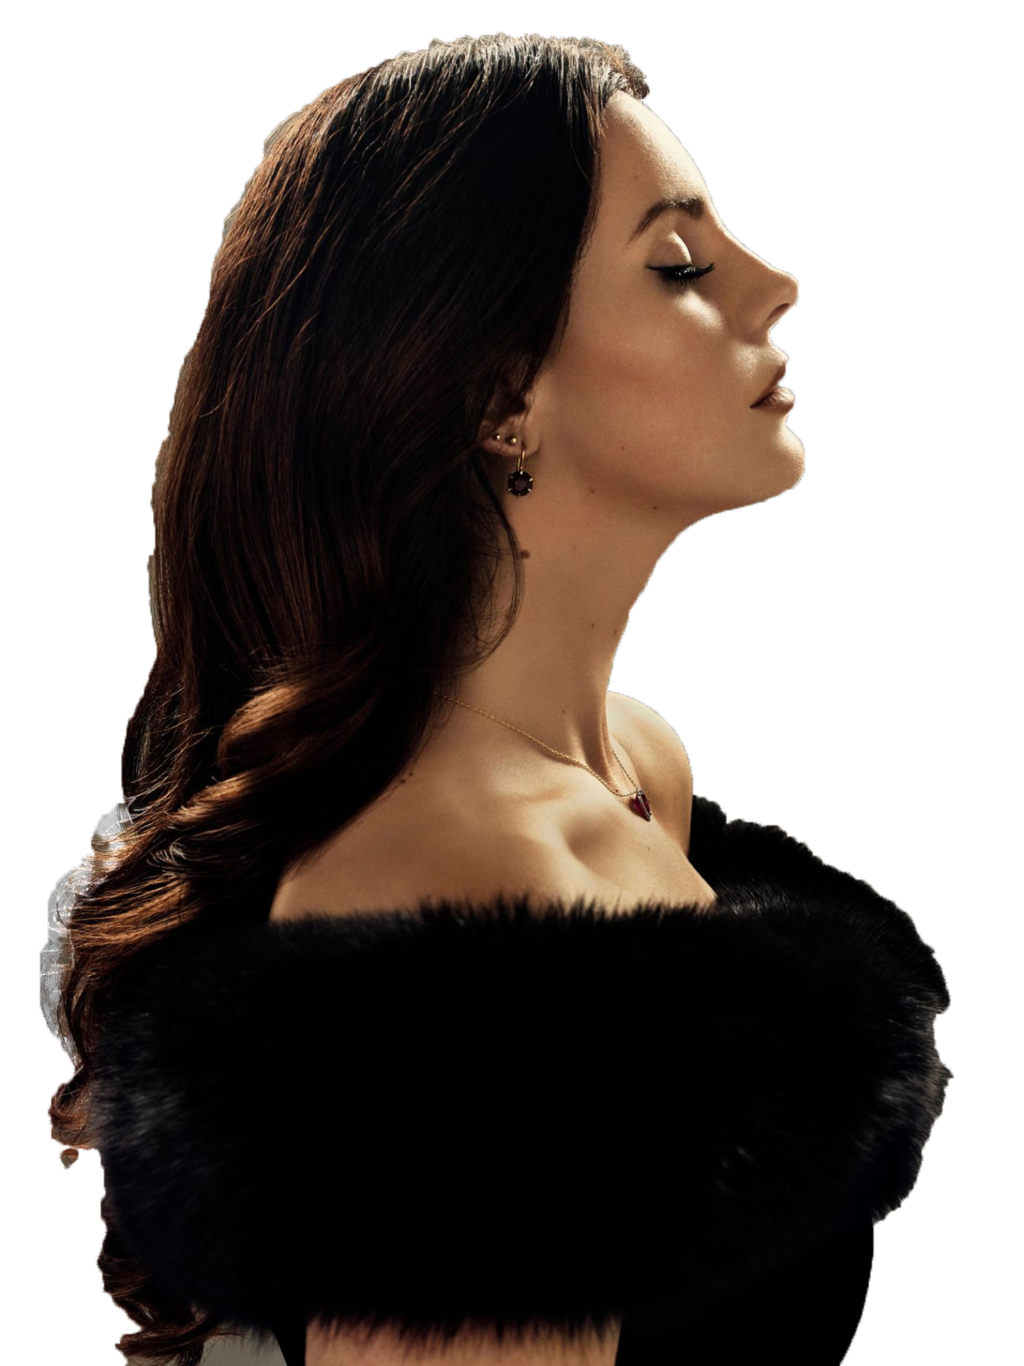 Singer Lana Del Rey Transparent Image